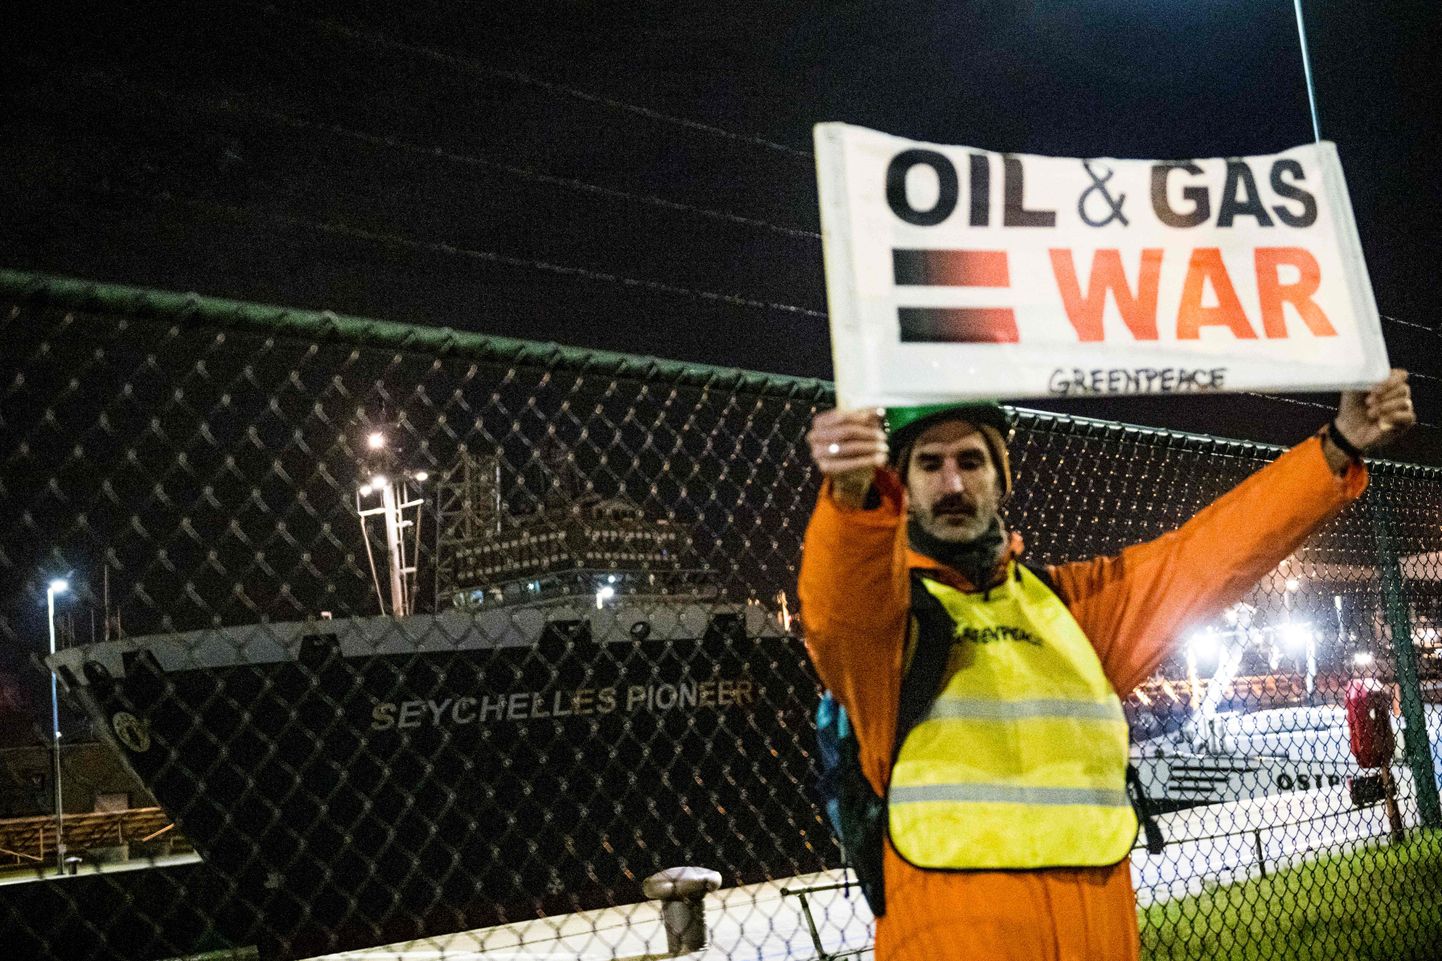 Greenpeace keskkonnaaktivist protestib sõjavastase plakatiga Antverpeni sadamas sildunud tankeri Seychelles Pioneer juures, millel teadaolevalt on pardal Venemaalt pärit naftalast. Photo by (JASPER JACOBS / BELGA / AFP) / Belgium